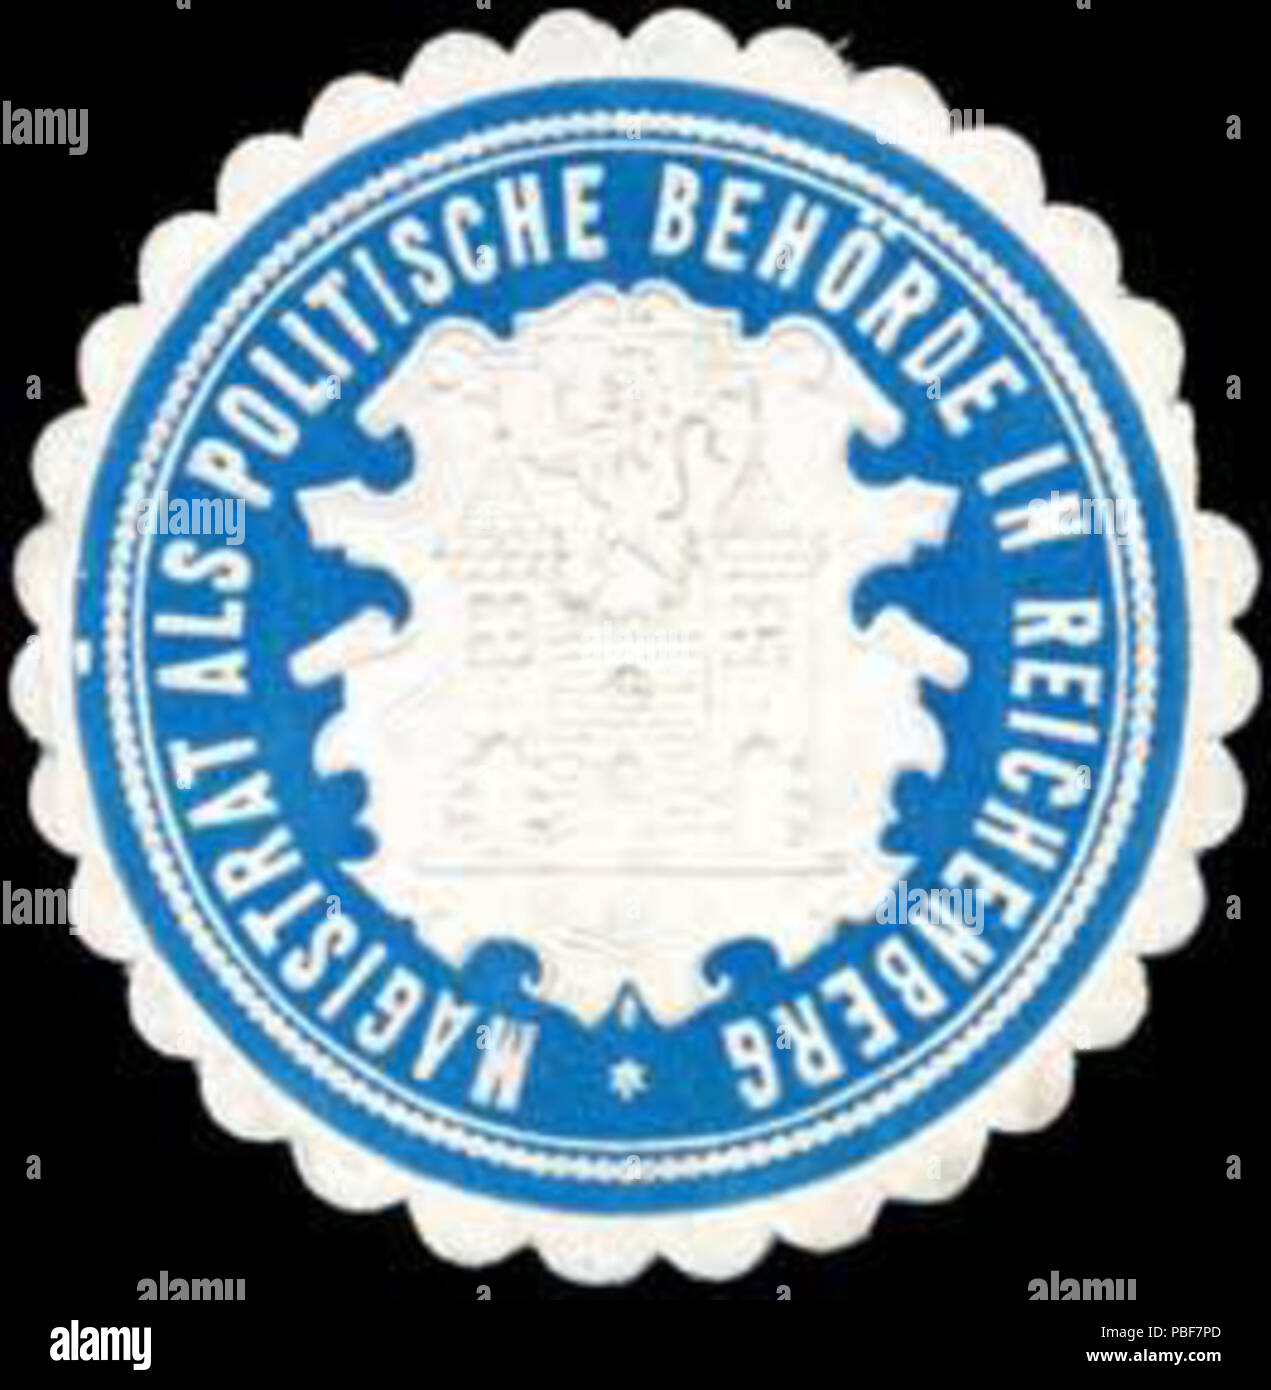 Alte Briefverschlussmarke aus Papier, welche seit ca. 1850 von Behoerden, Anwaelten, Notaren und Firmen zum verschliessen der Post verwendet wurde. 1486 Siegelmarke Magistrat in Reichenberg als politische Behörde W0317729 Stock Photo